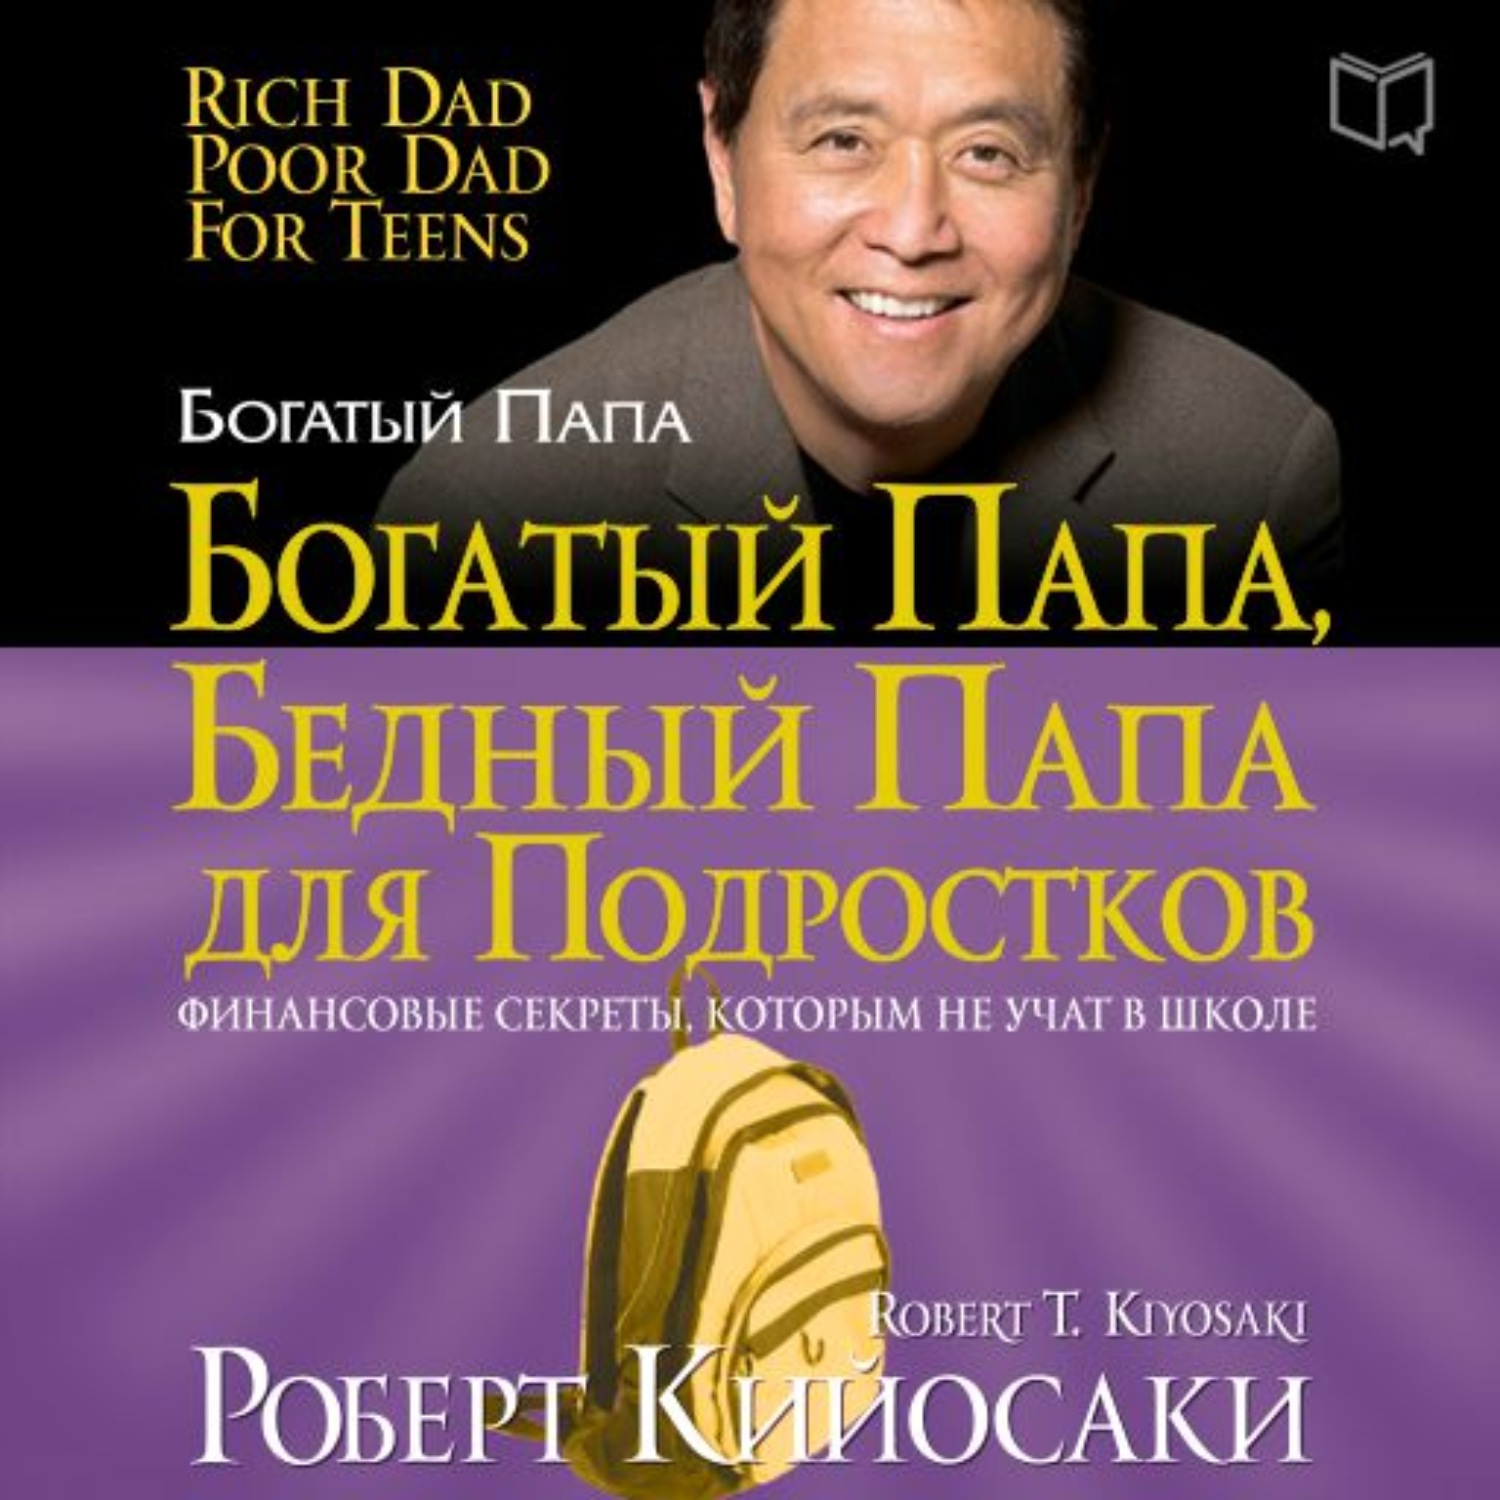 Книги про богатого и бедную